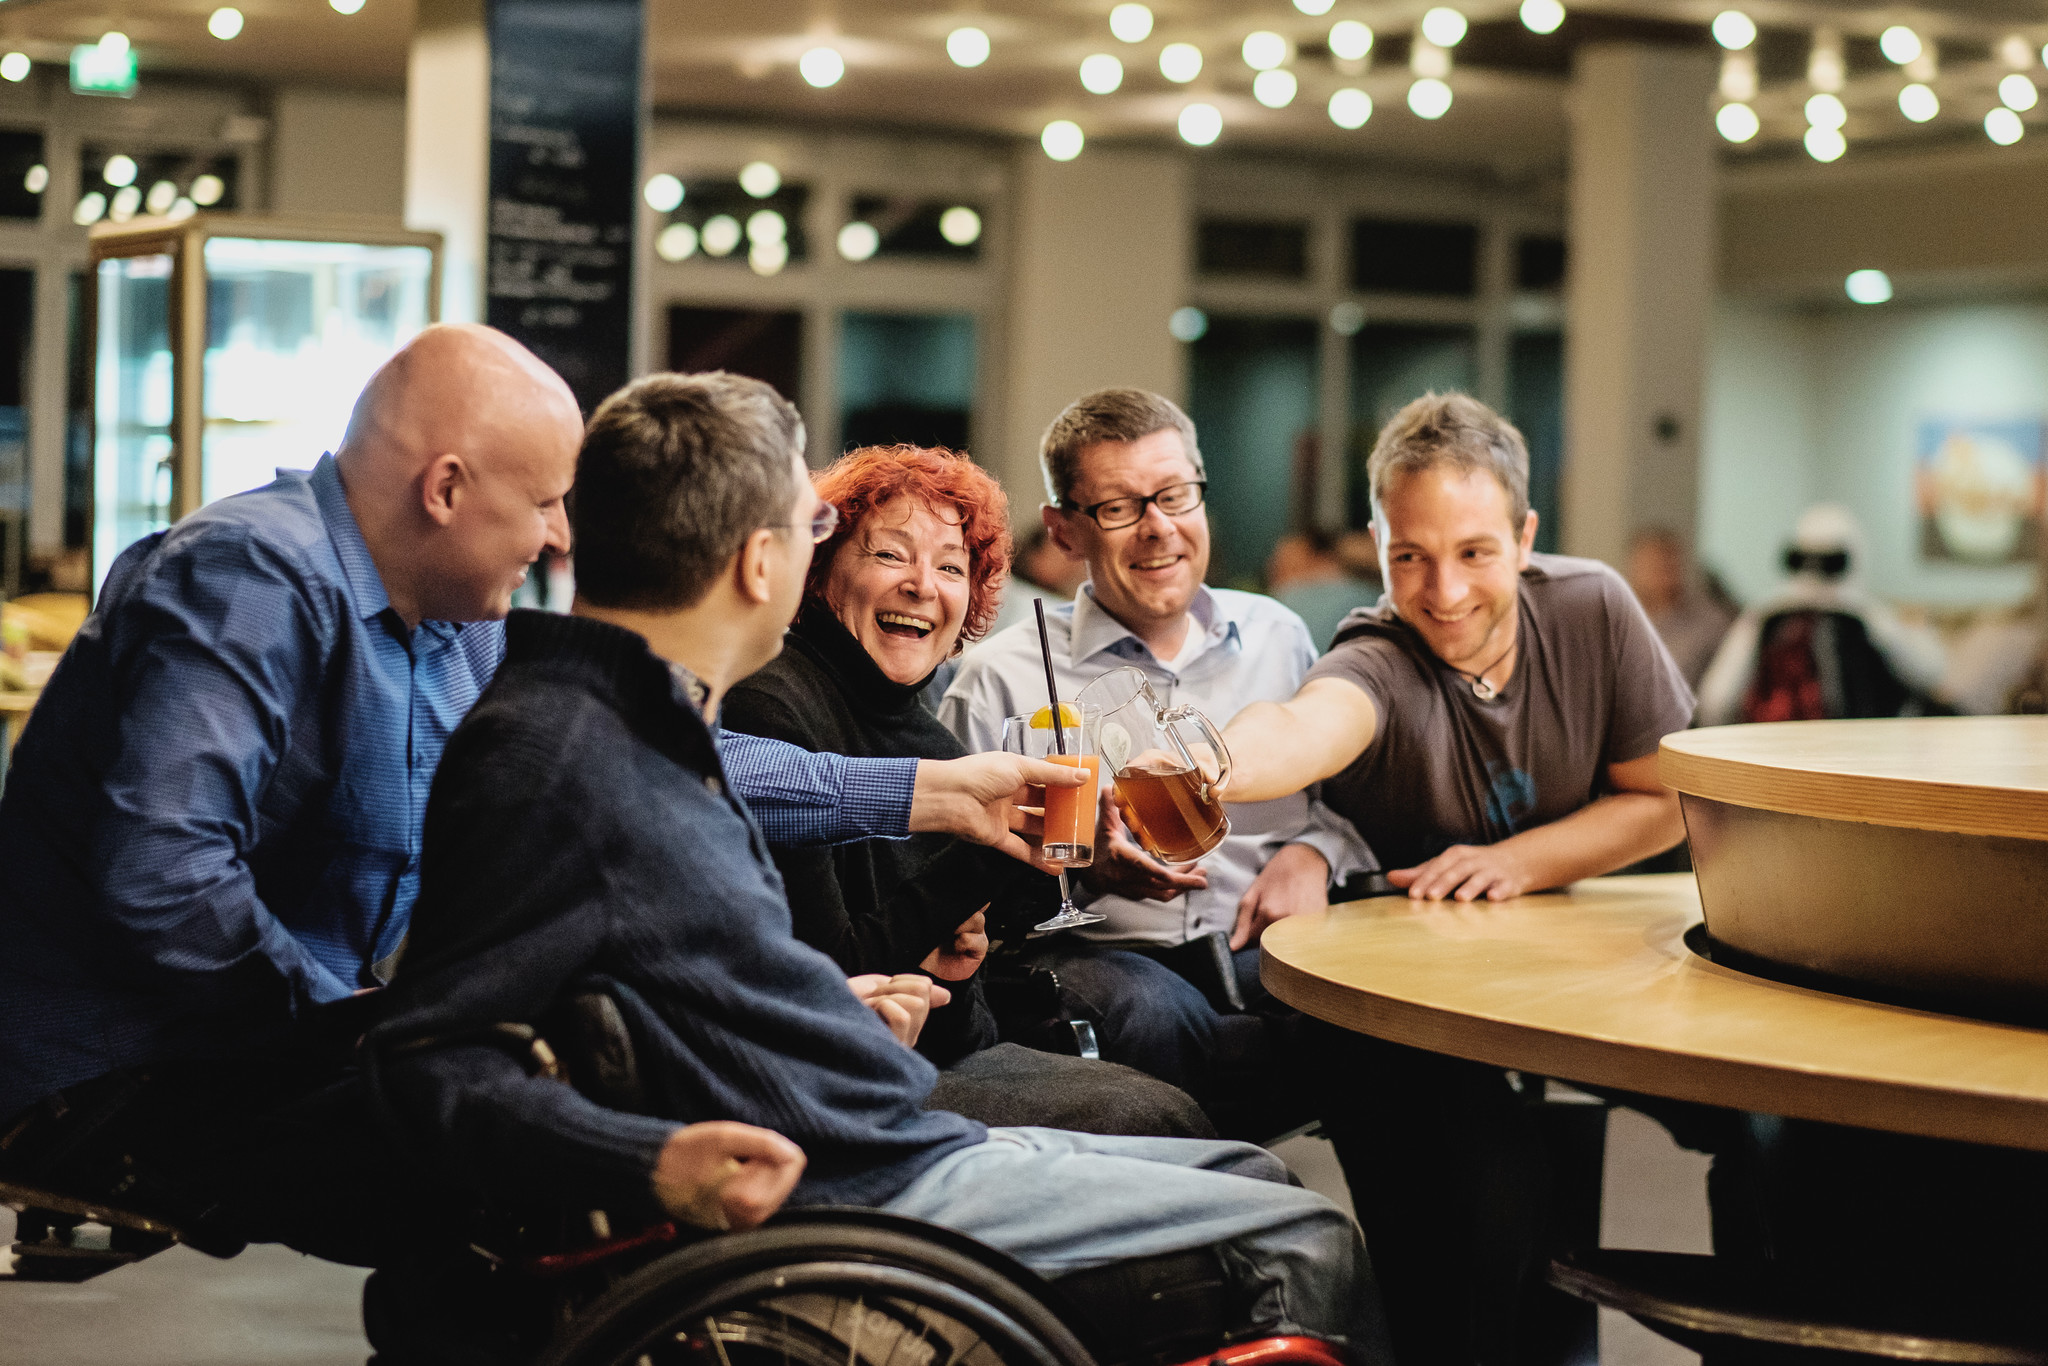 Mehrere Menschen mit Behinderung sitzen zusammen, stoßen mit Getränken an und lachen fröhlich.